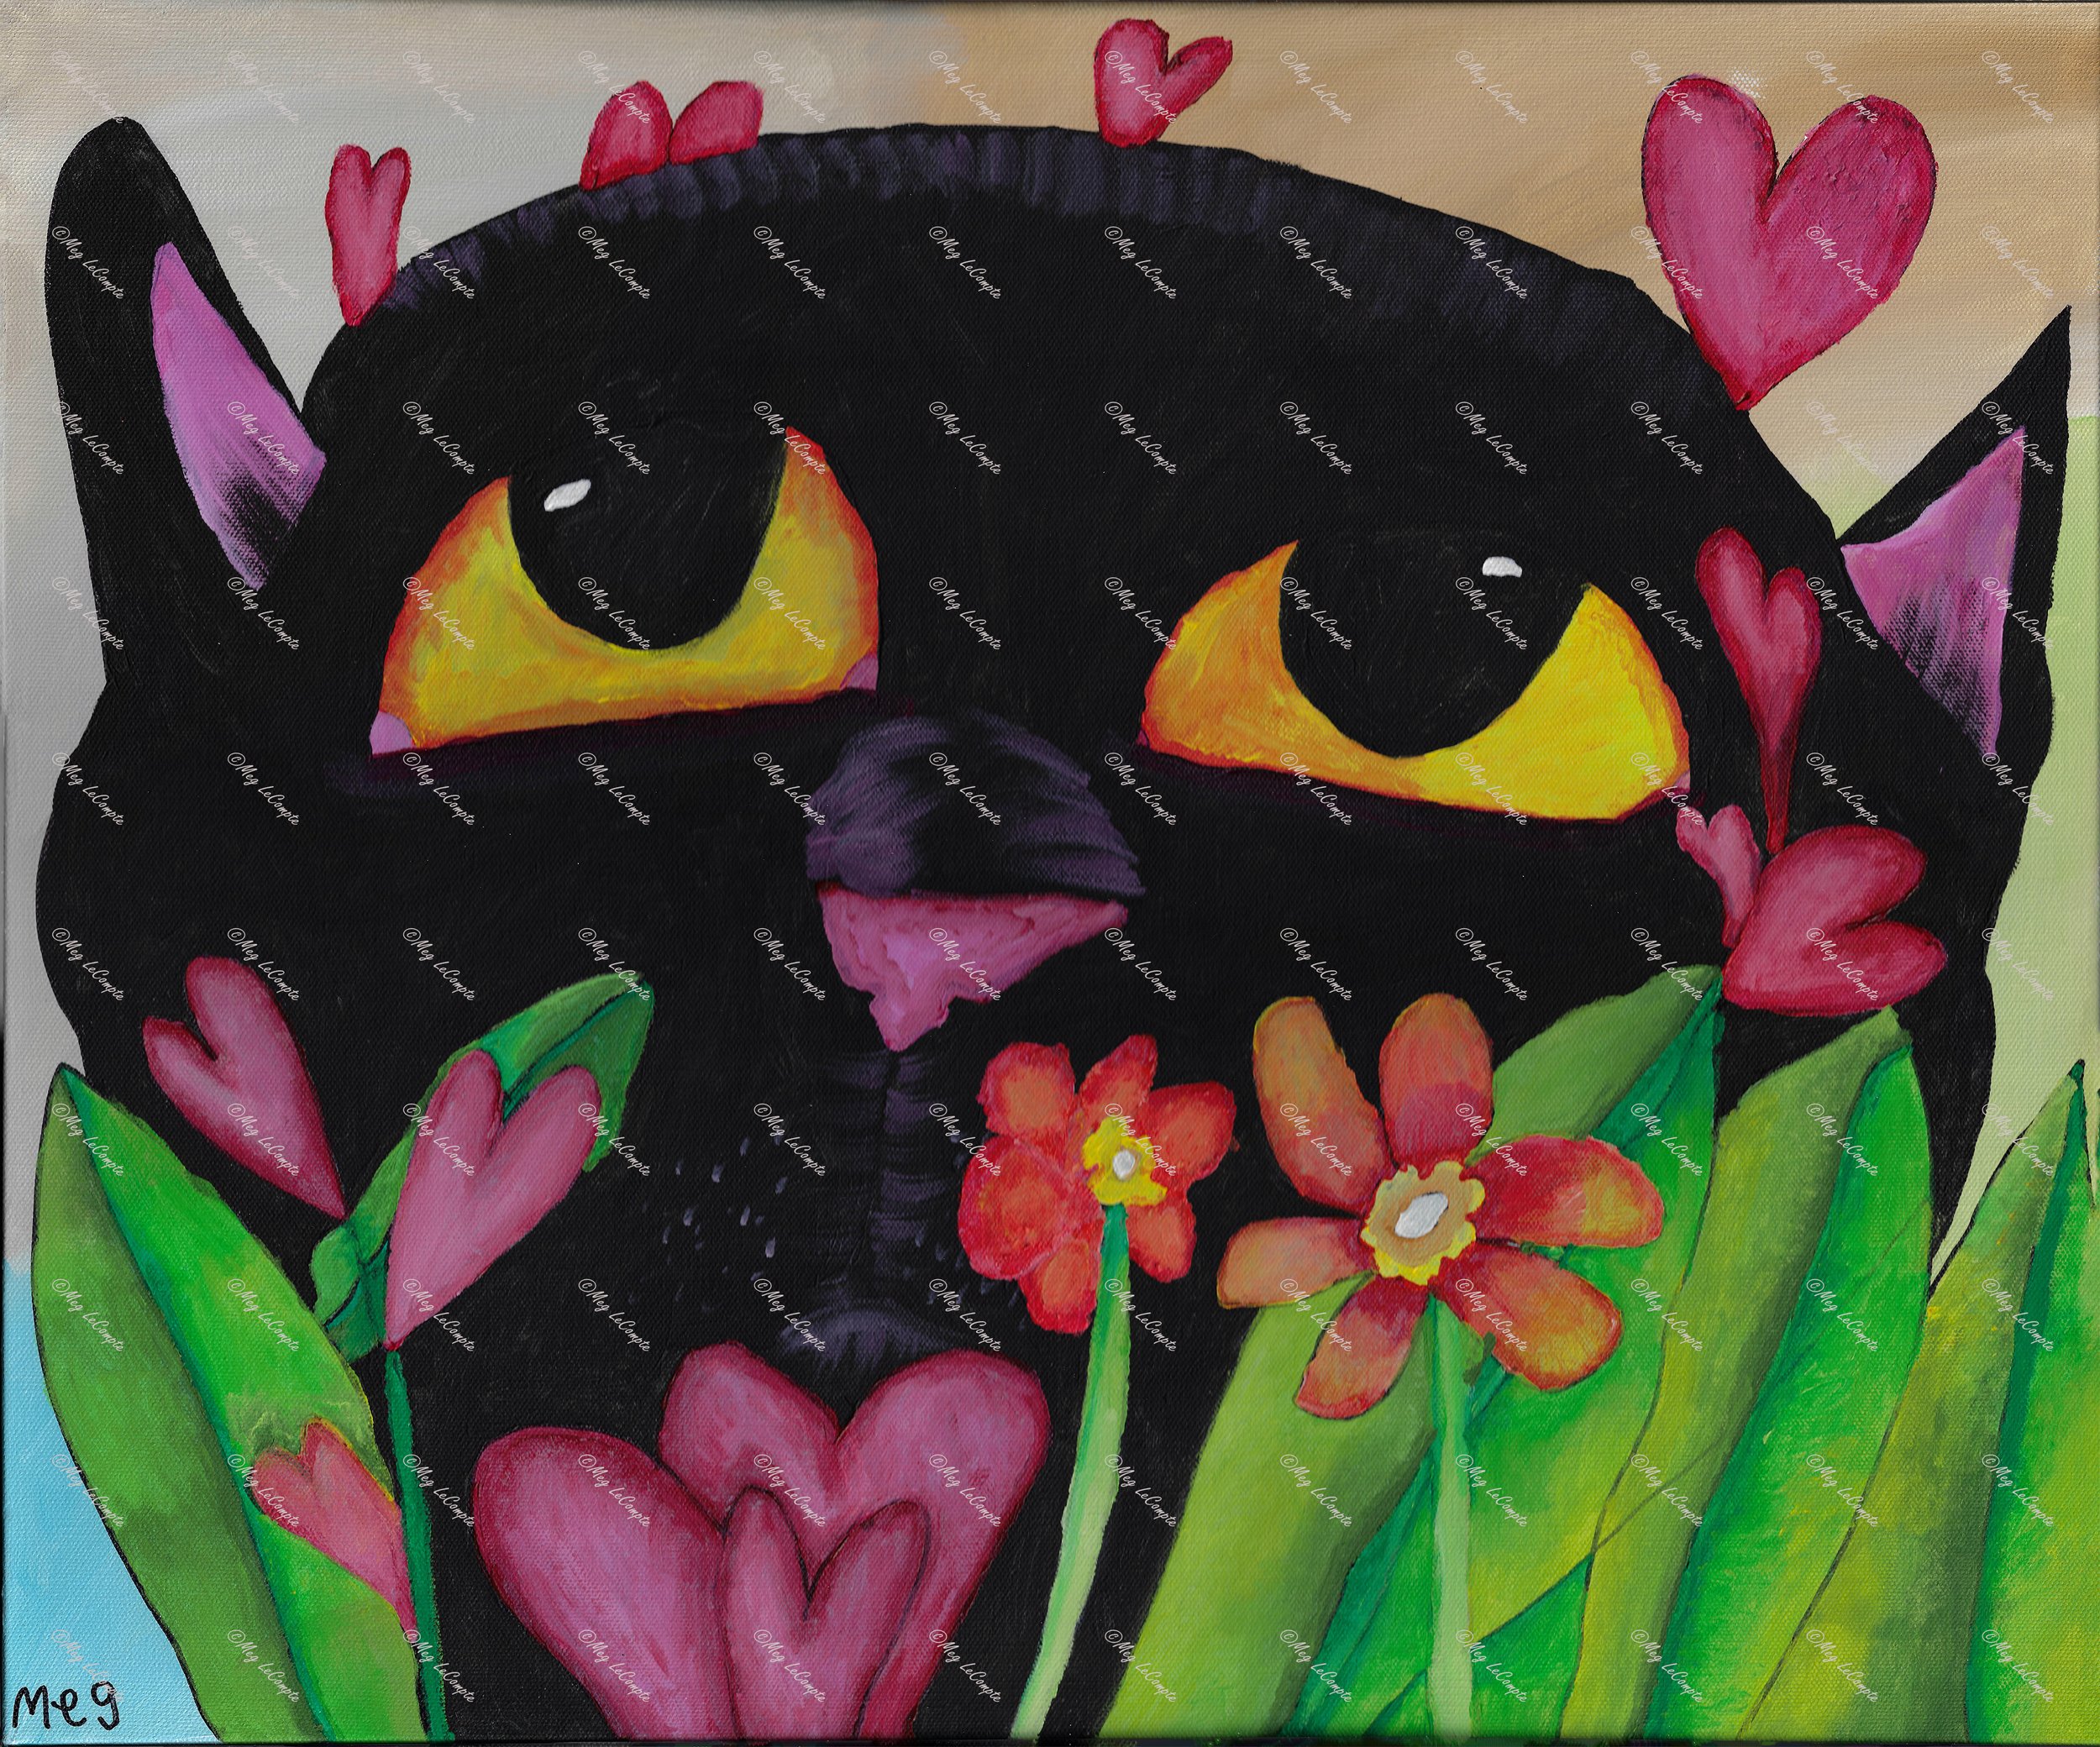 The Black Cat Smells the Wildflowers.watermark.jpg